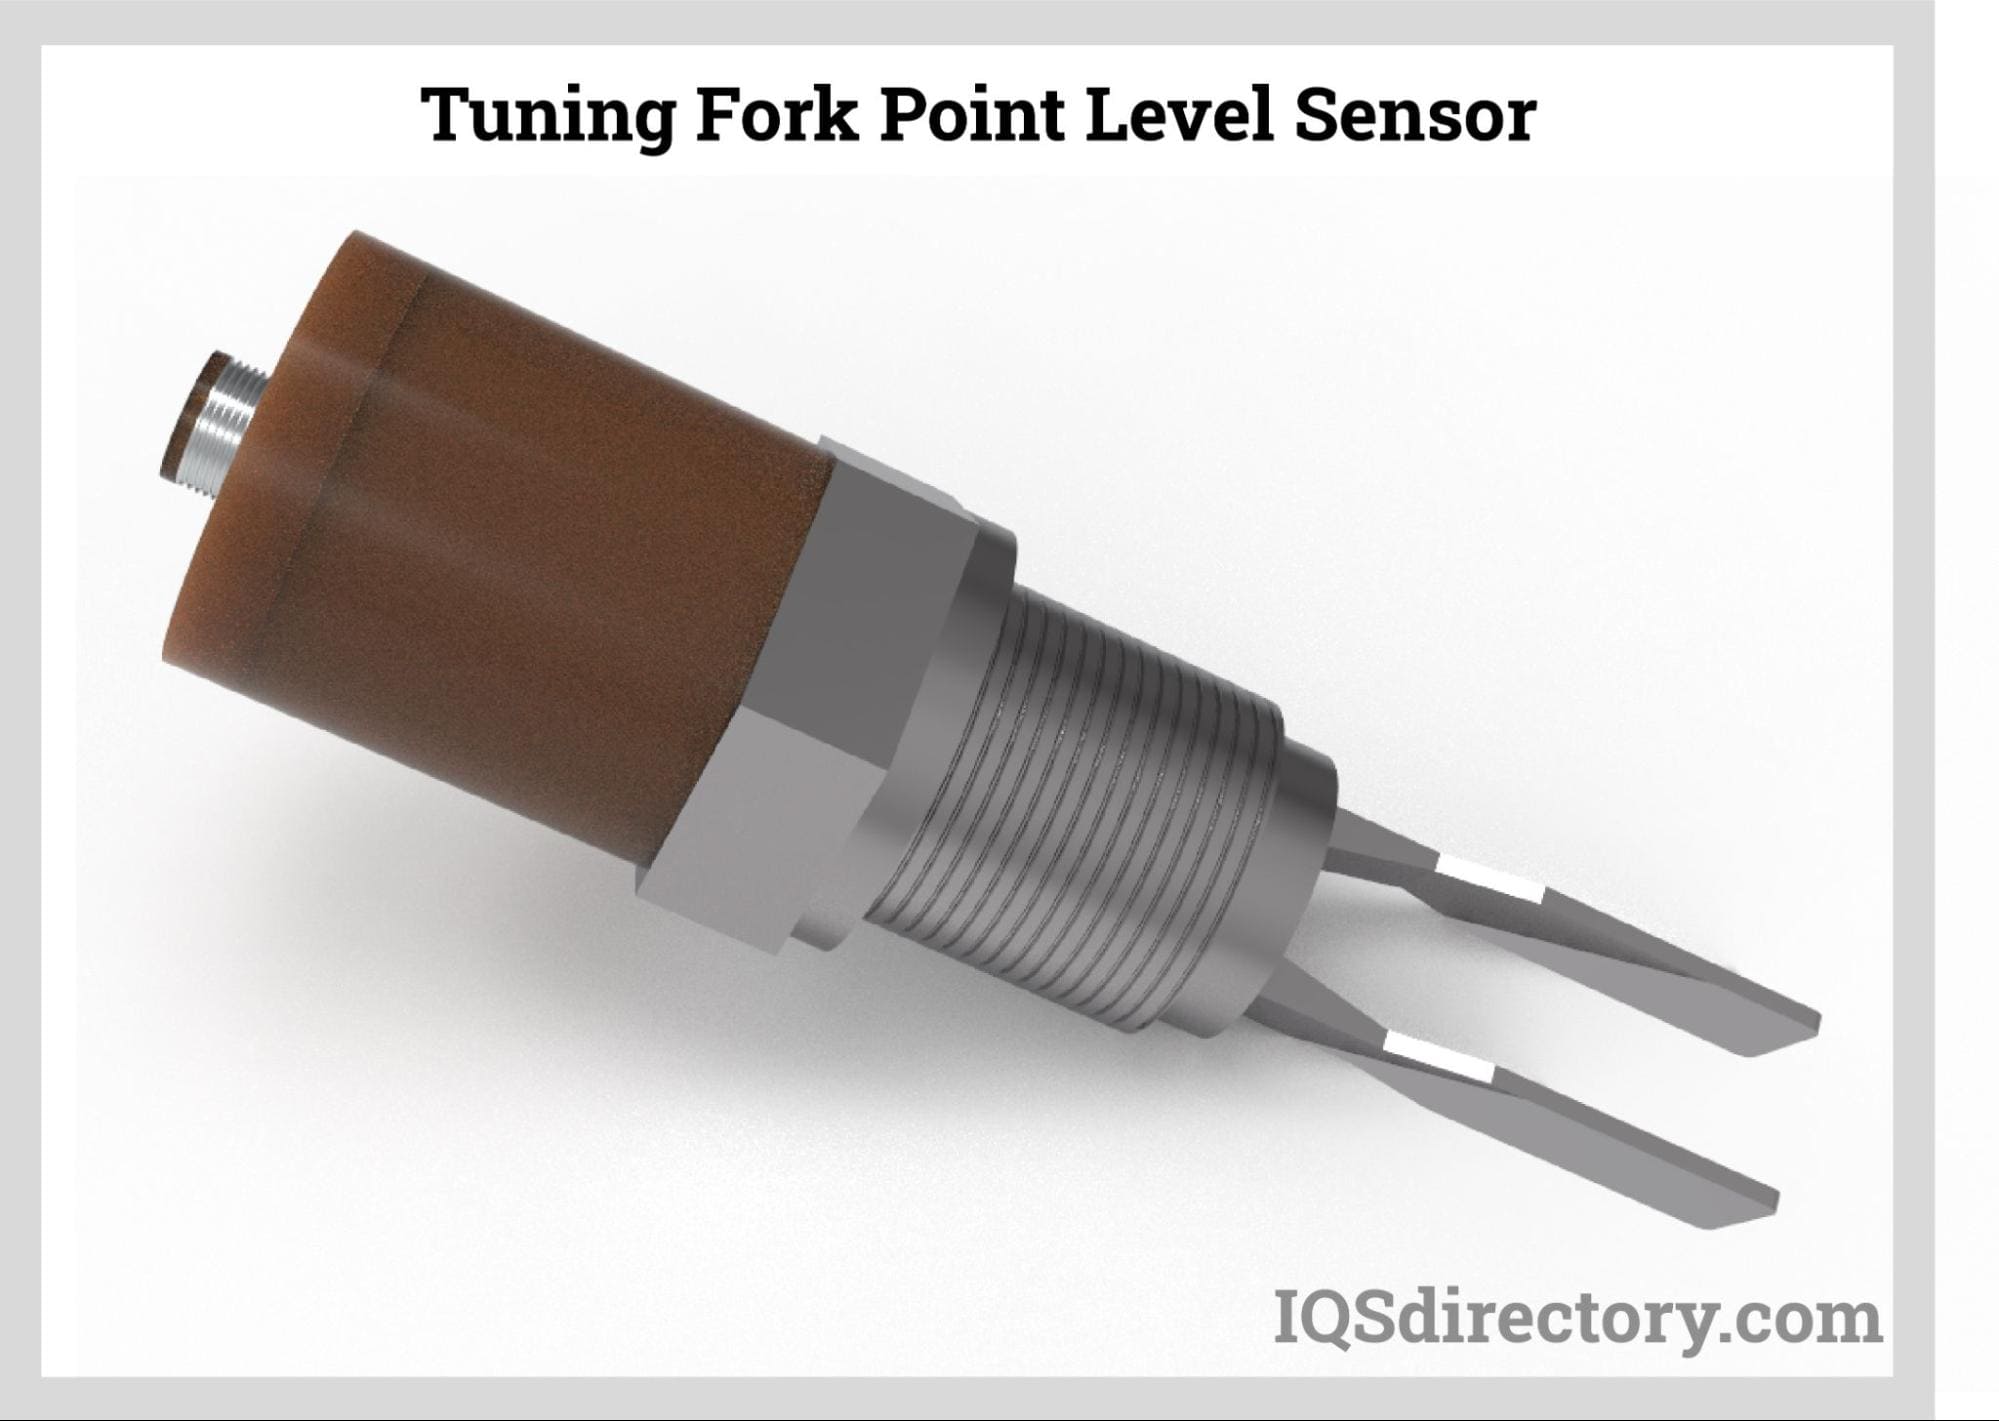 Tuning Fork Point Level Sensor